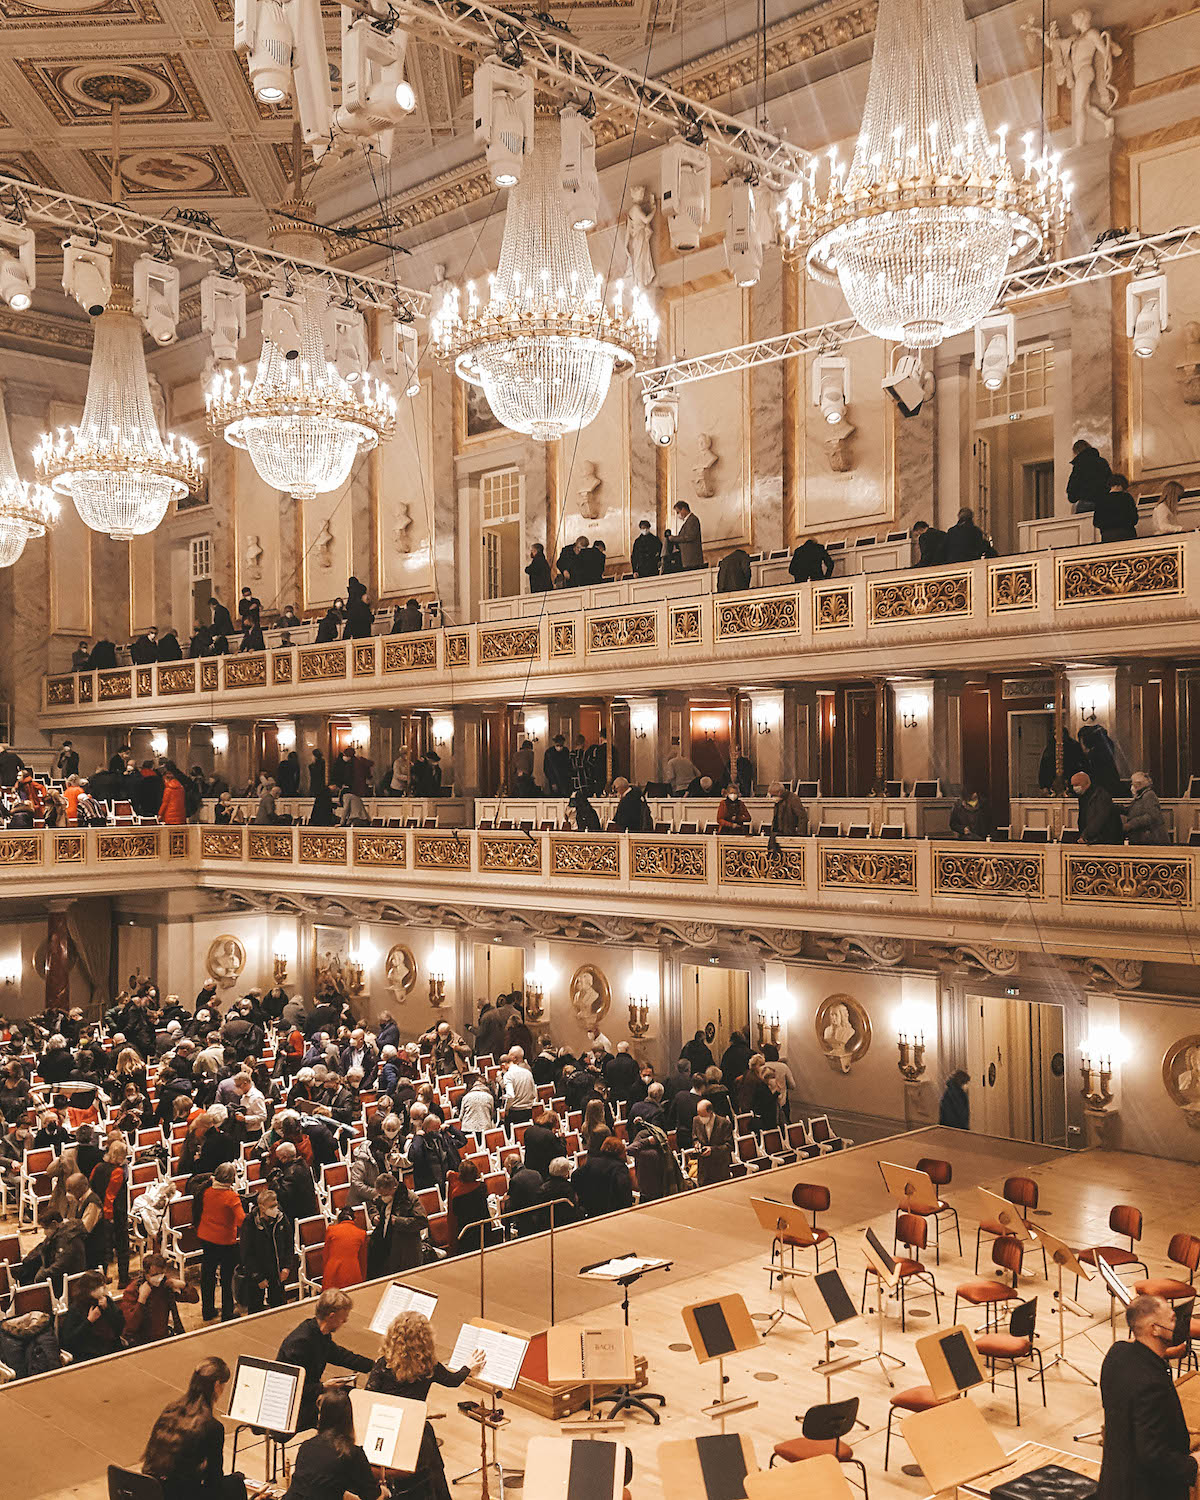 Inside the Konzerthaus in Berlin